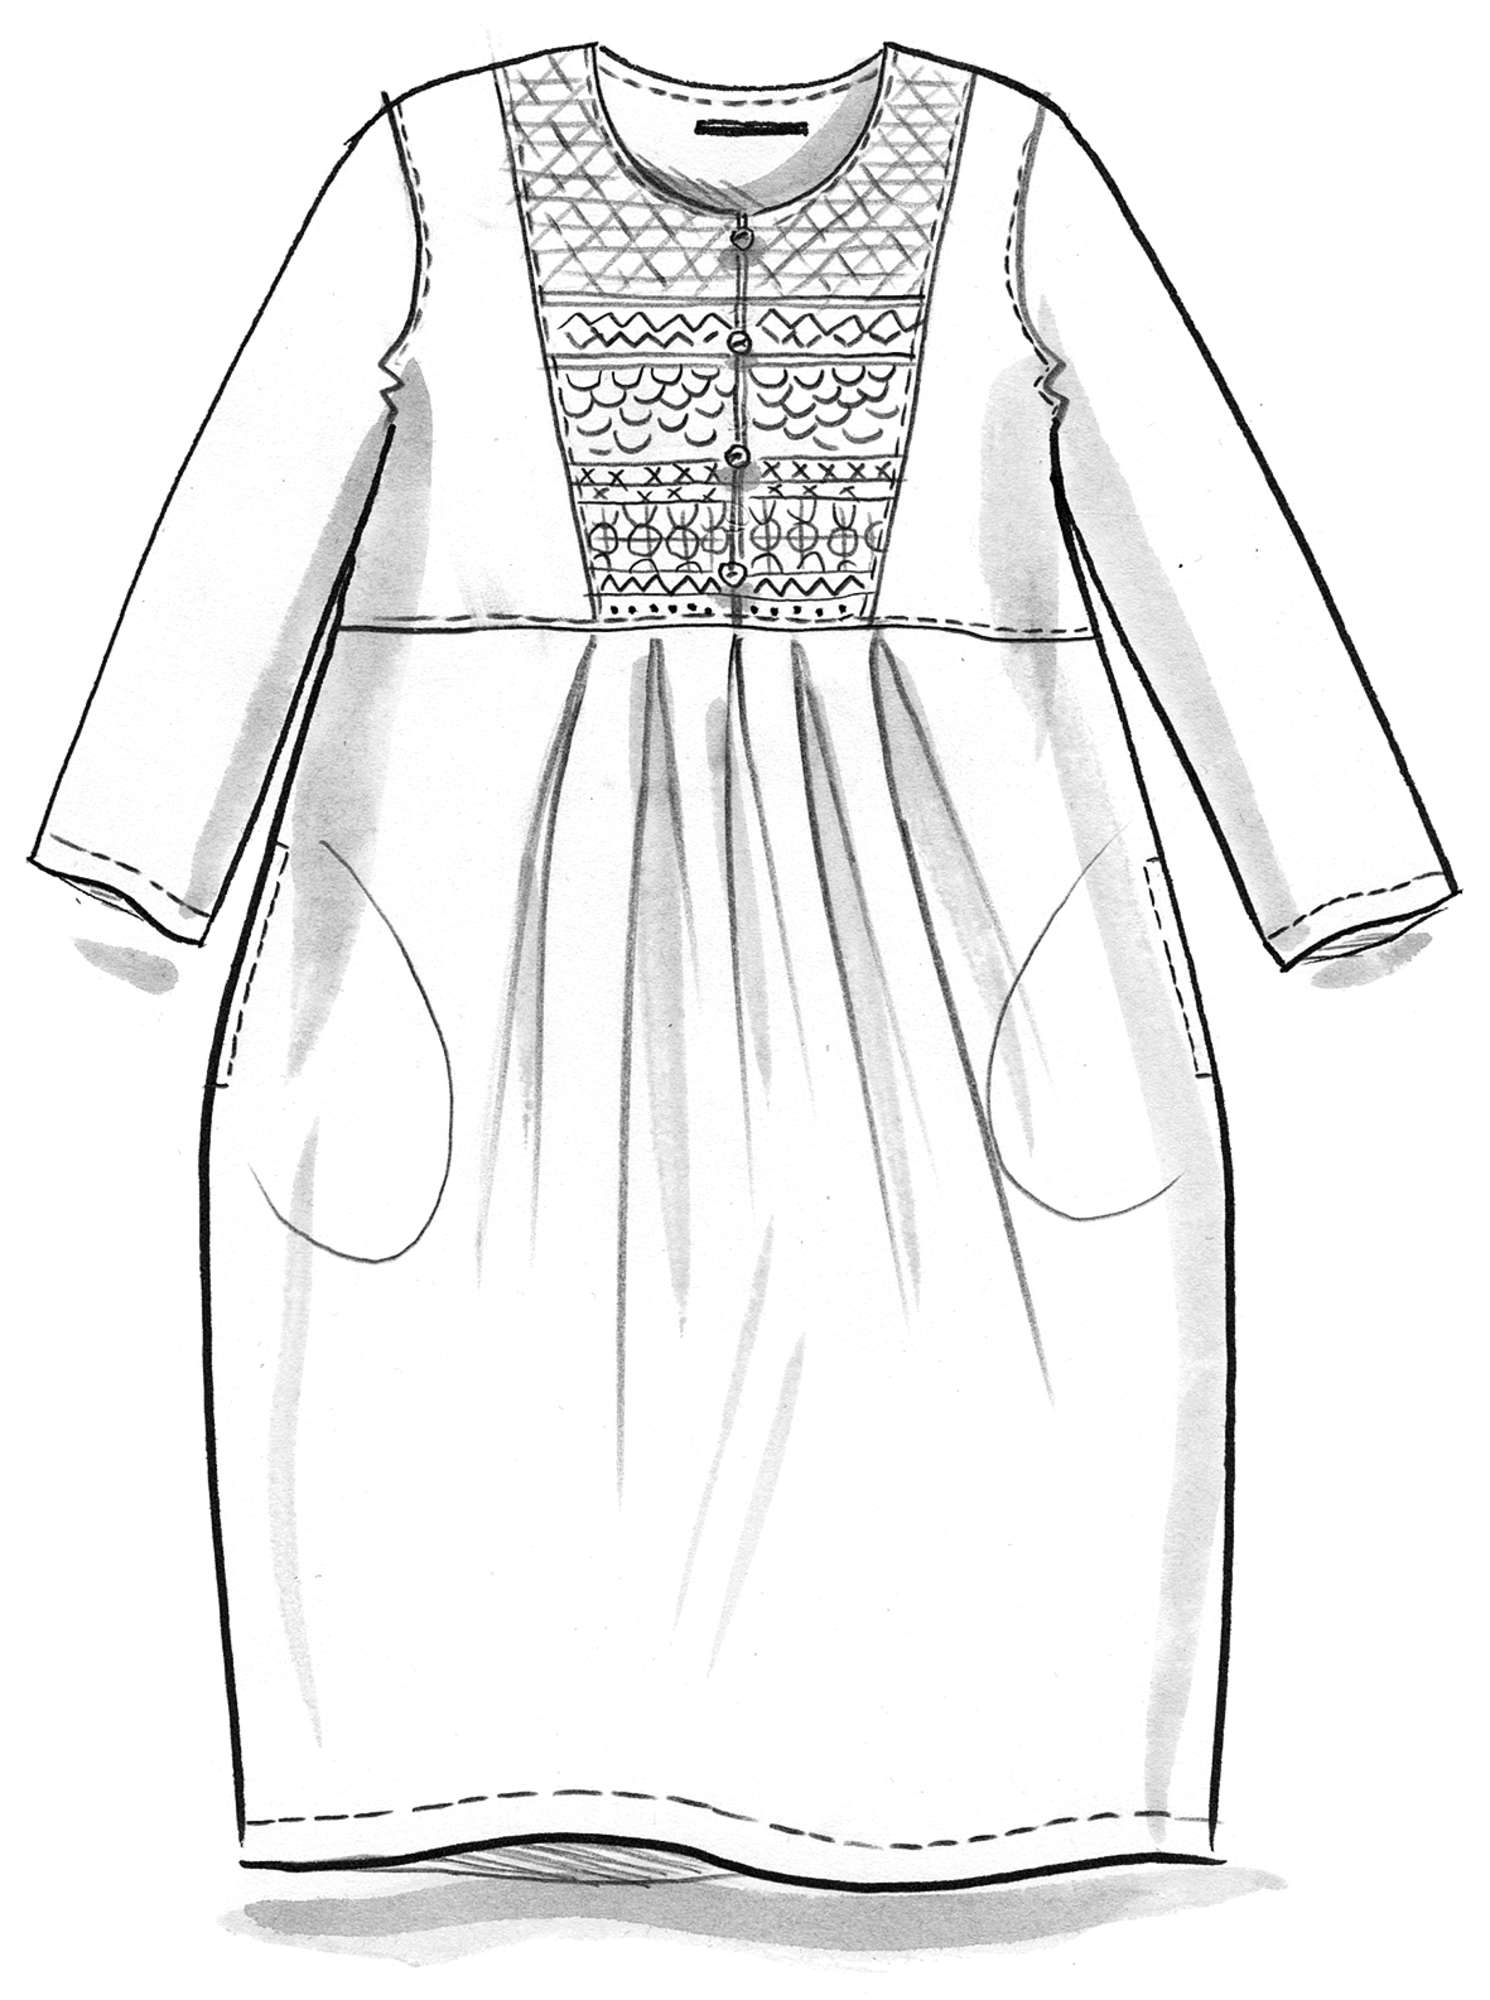 “Korinth” woven linen dress